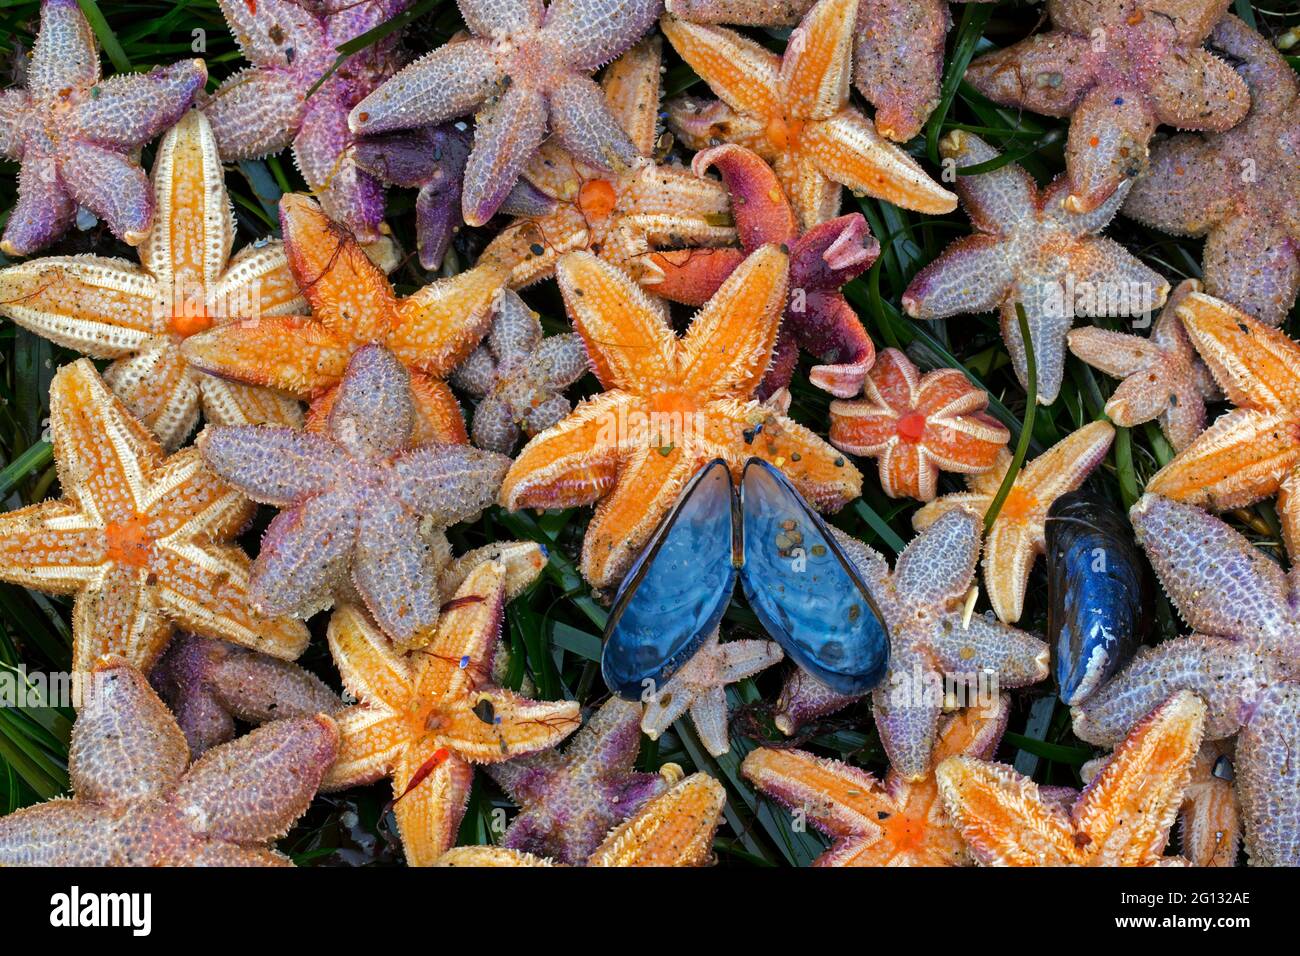 Échouage massif d'étoiles de mer communes mortes / étoiles de mer communes / étoiles de mer à sucre (Asterias rubens) lavées à terre sur la plage de sable le long de la côte de la mer du Nord Banque D'Images